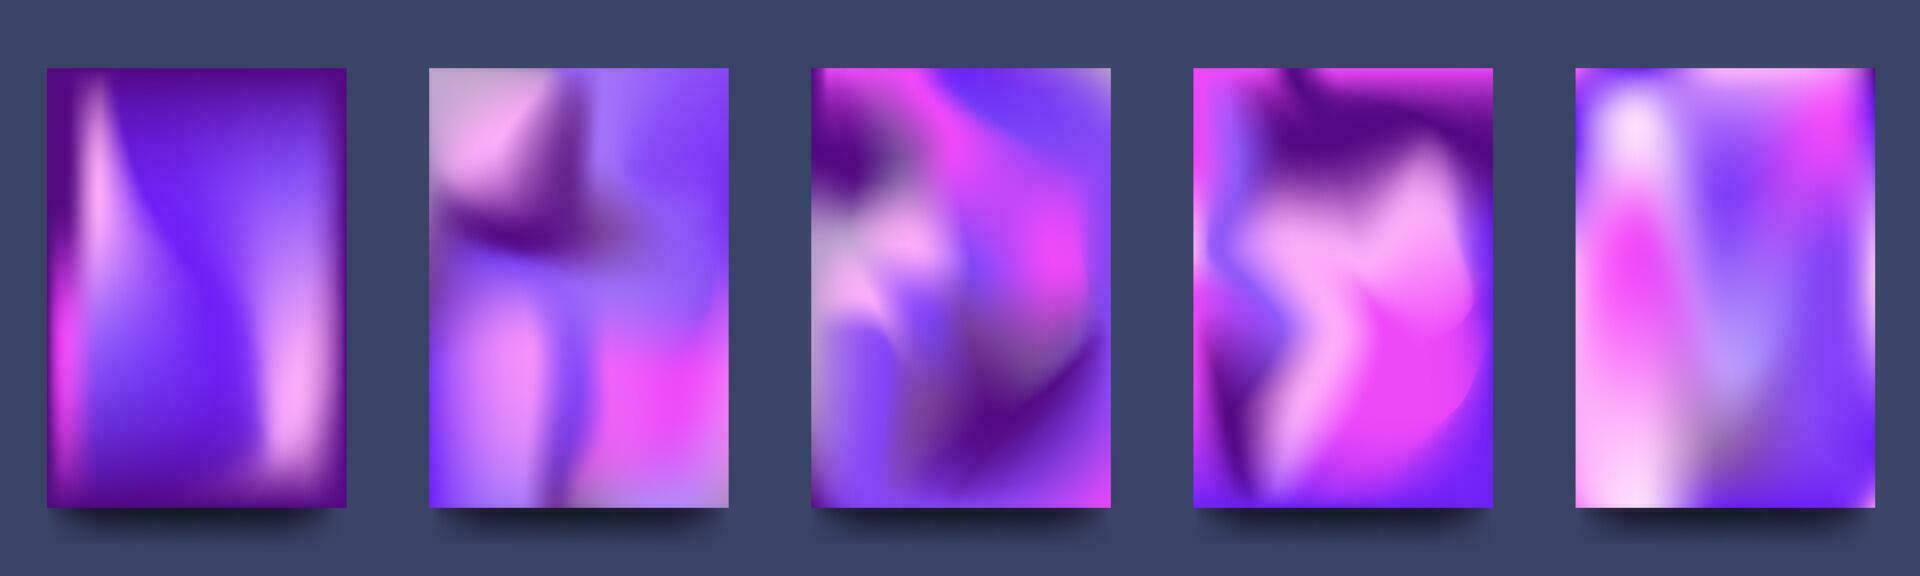 reeks van abstract holografische minimaal vector achtergronden. poster verzameling met neon vloeistof, helder vervaagt. vector illustratie